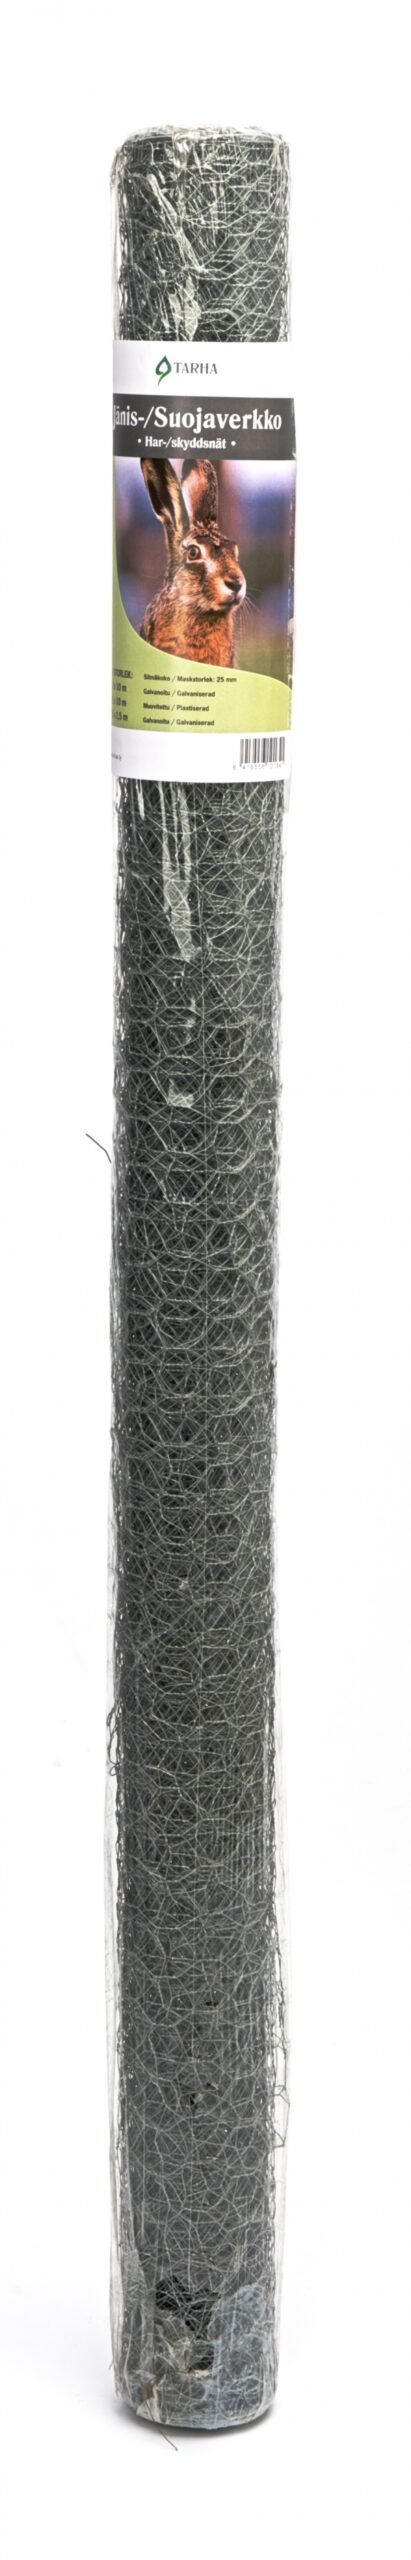 Kaitsevõrk jäneste eest 1,5 x 2,5m, traadipaksus 0,9mm, plastikkattega